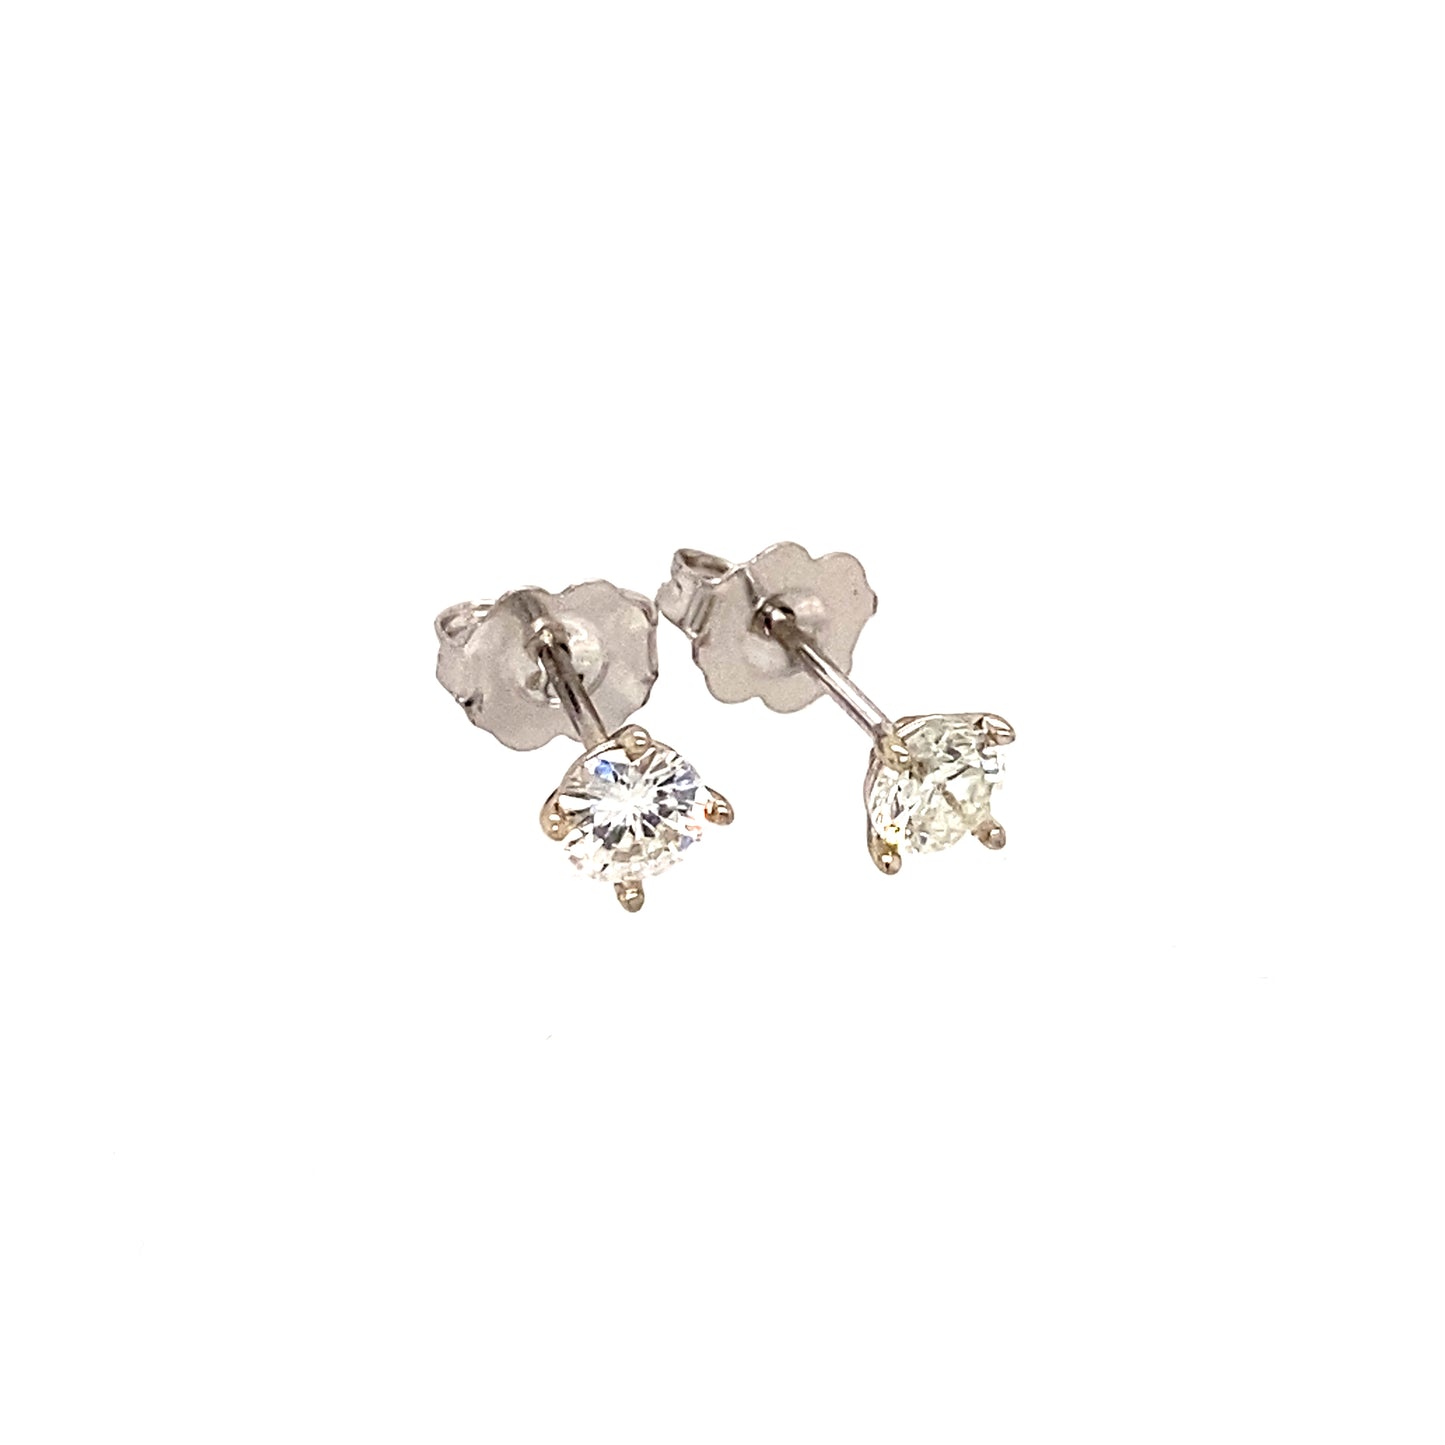 14K White Gold 0.50 ctw Diamond Stud Earrings